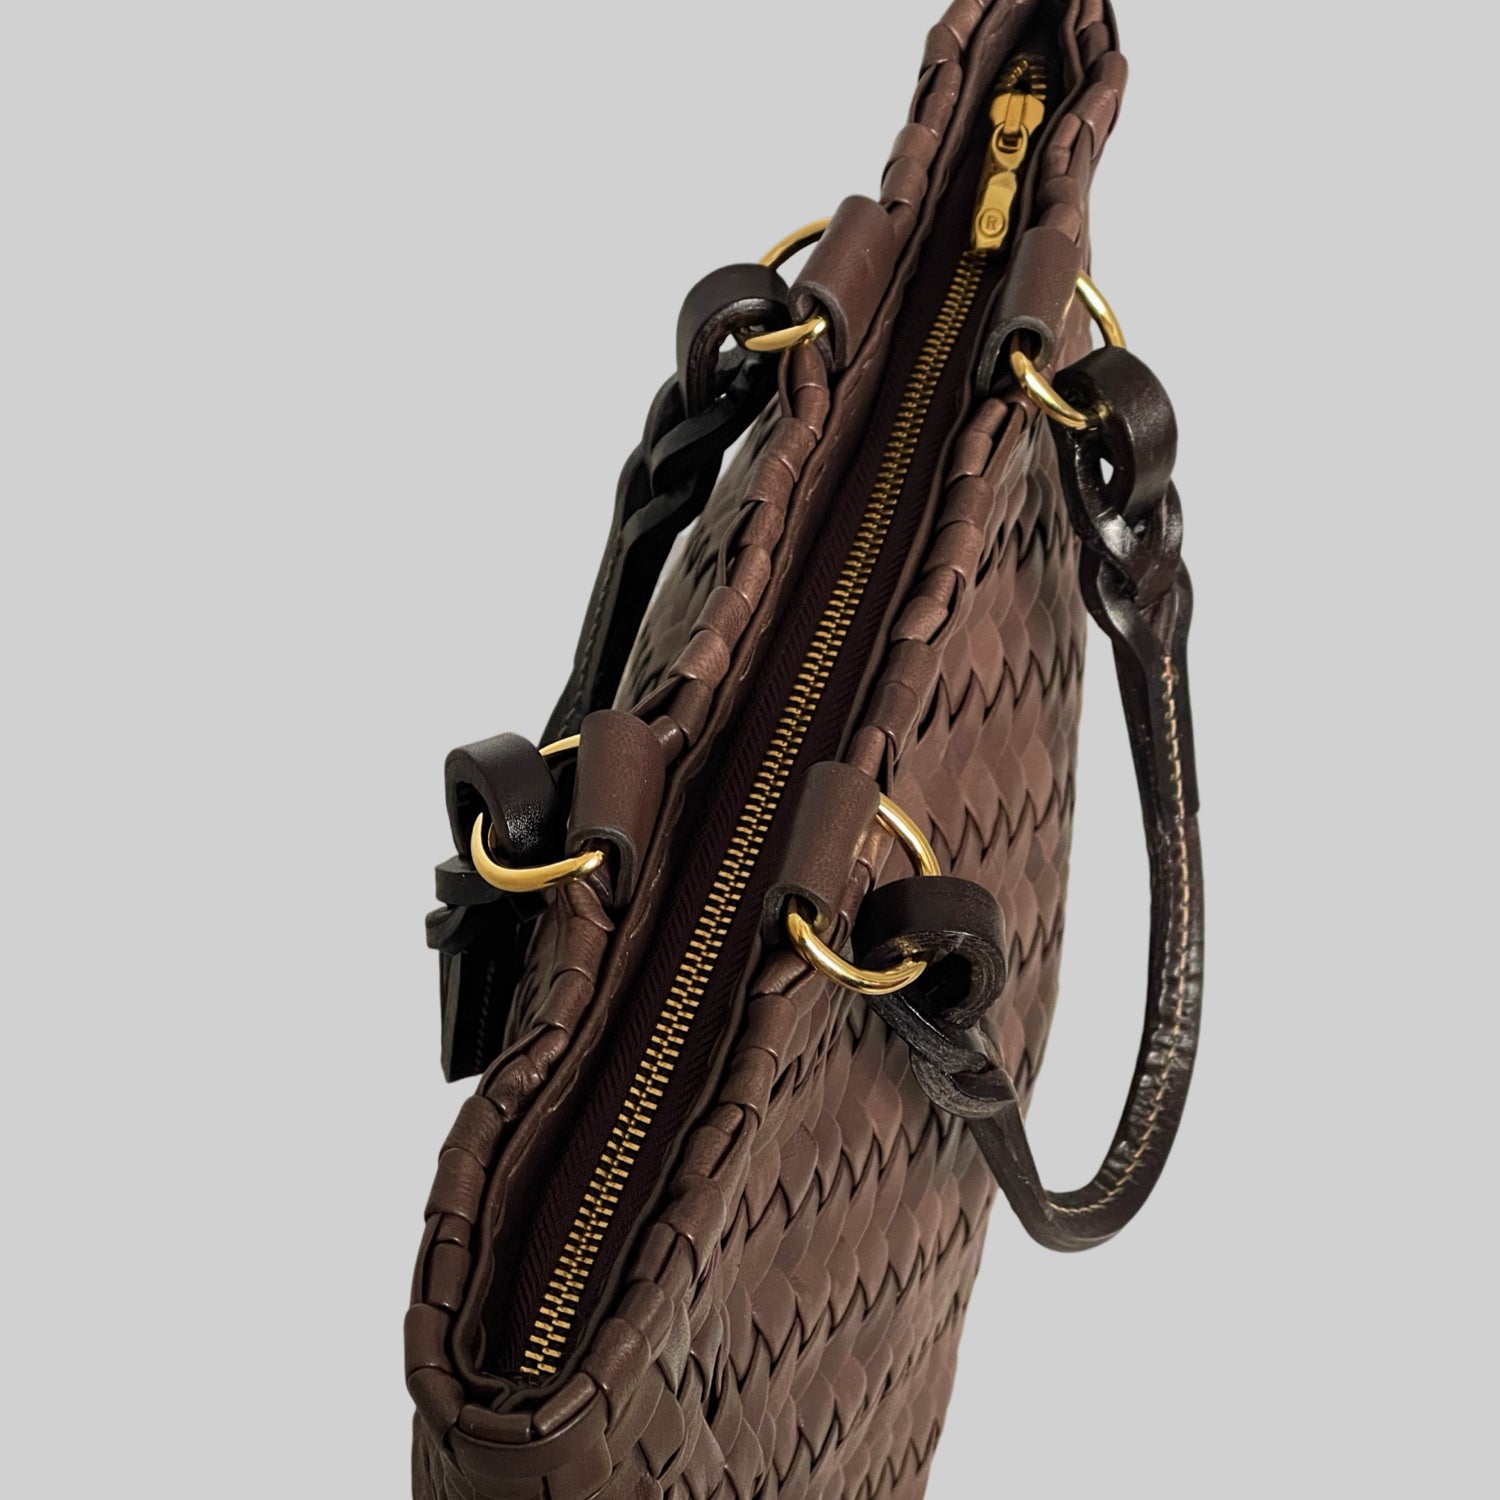 Ribichini Safari Lady-vesken i brunt, med flettet lammeskinn og glidelås, kombinerer stil og funksjonalitet på en elegant måte.